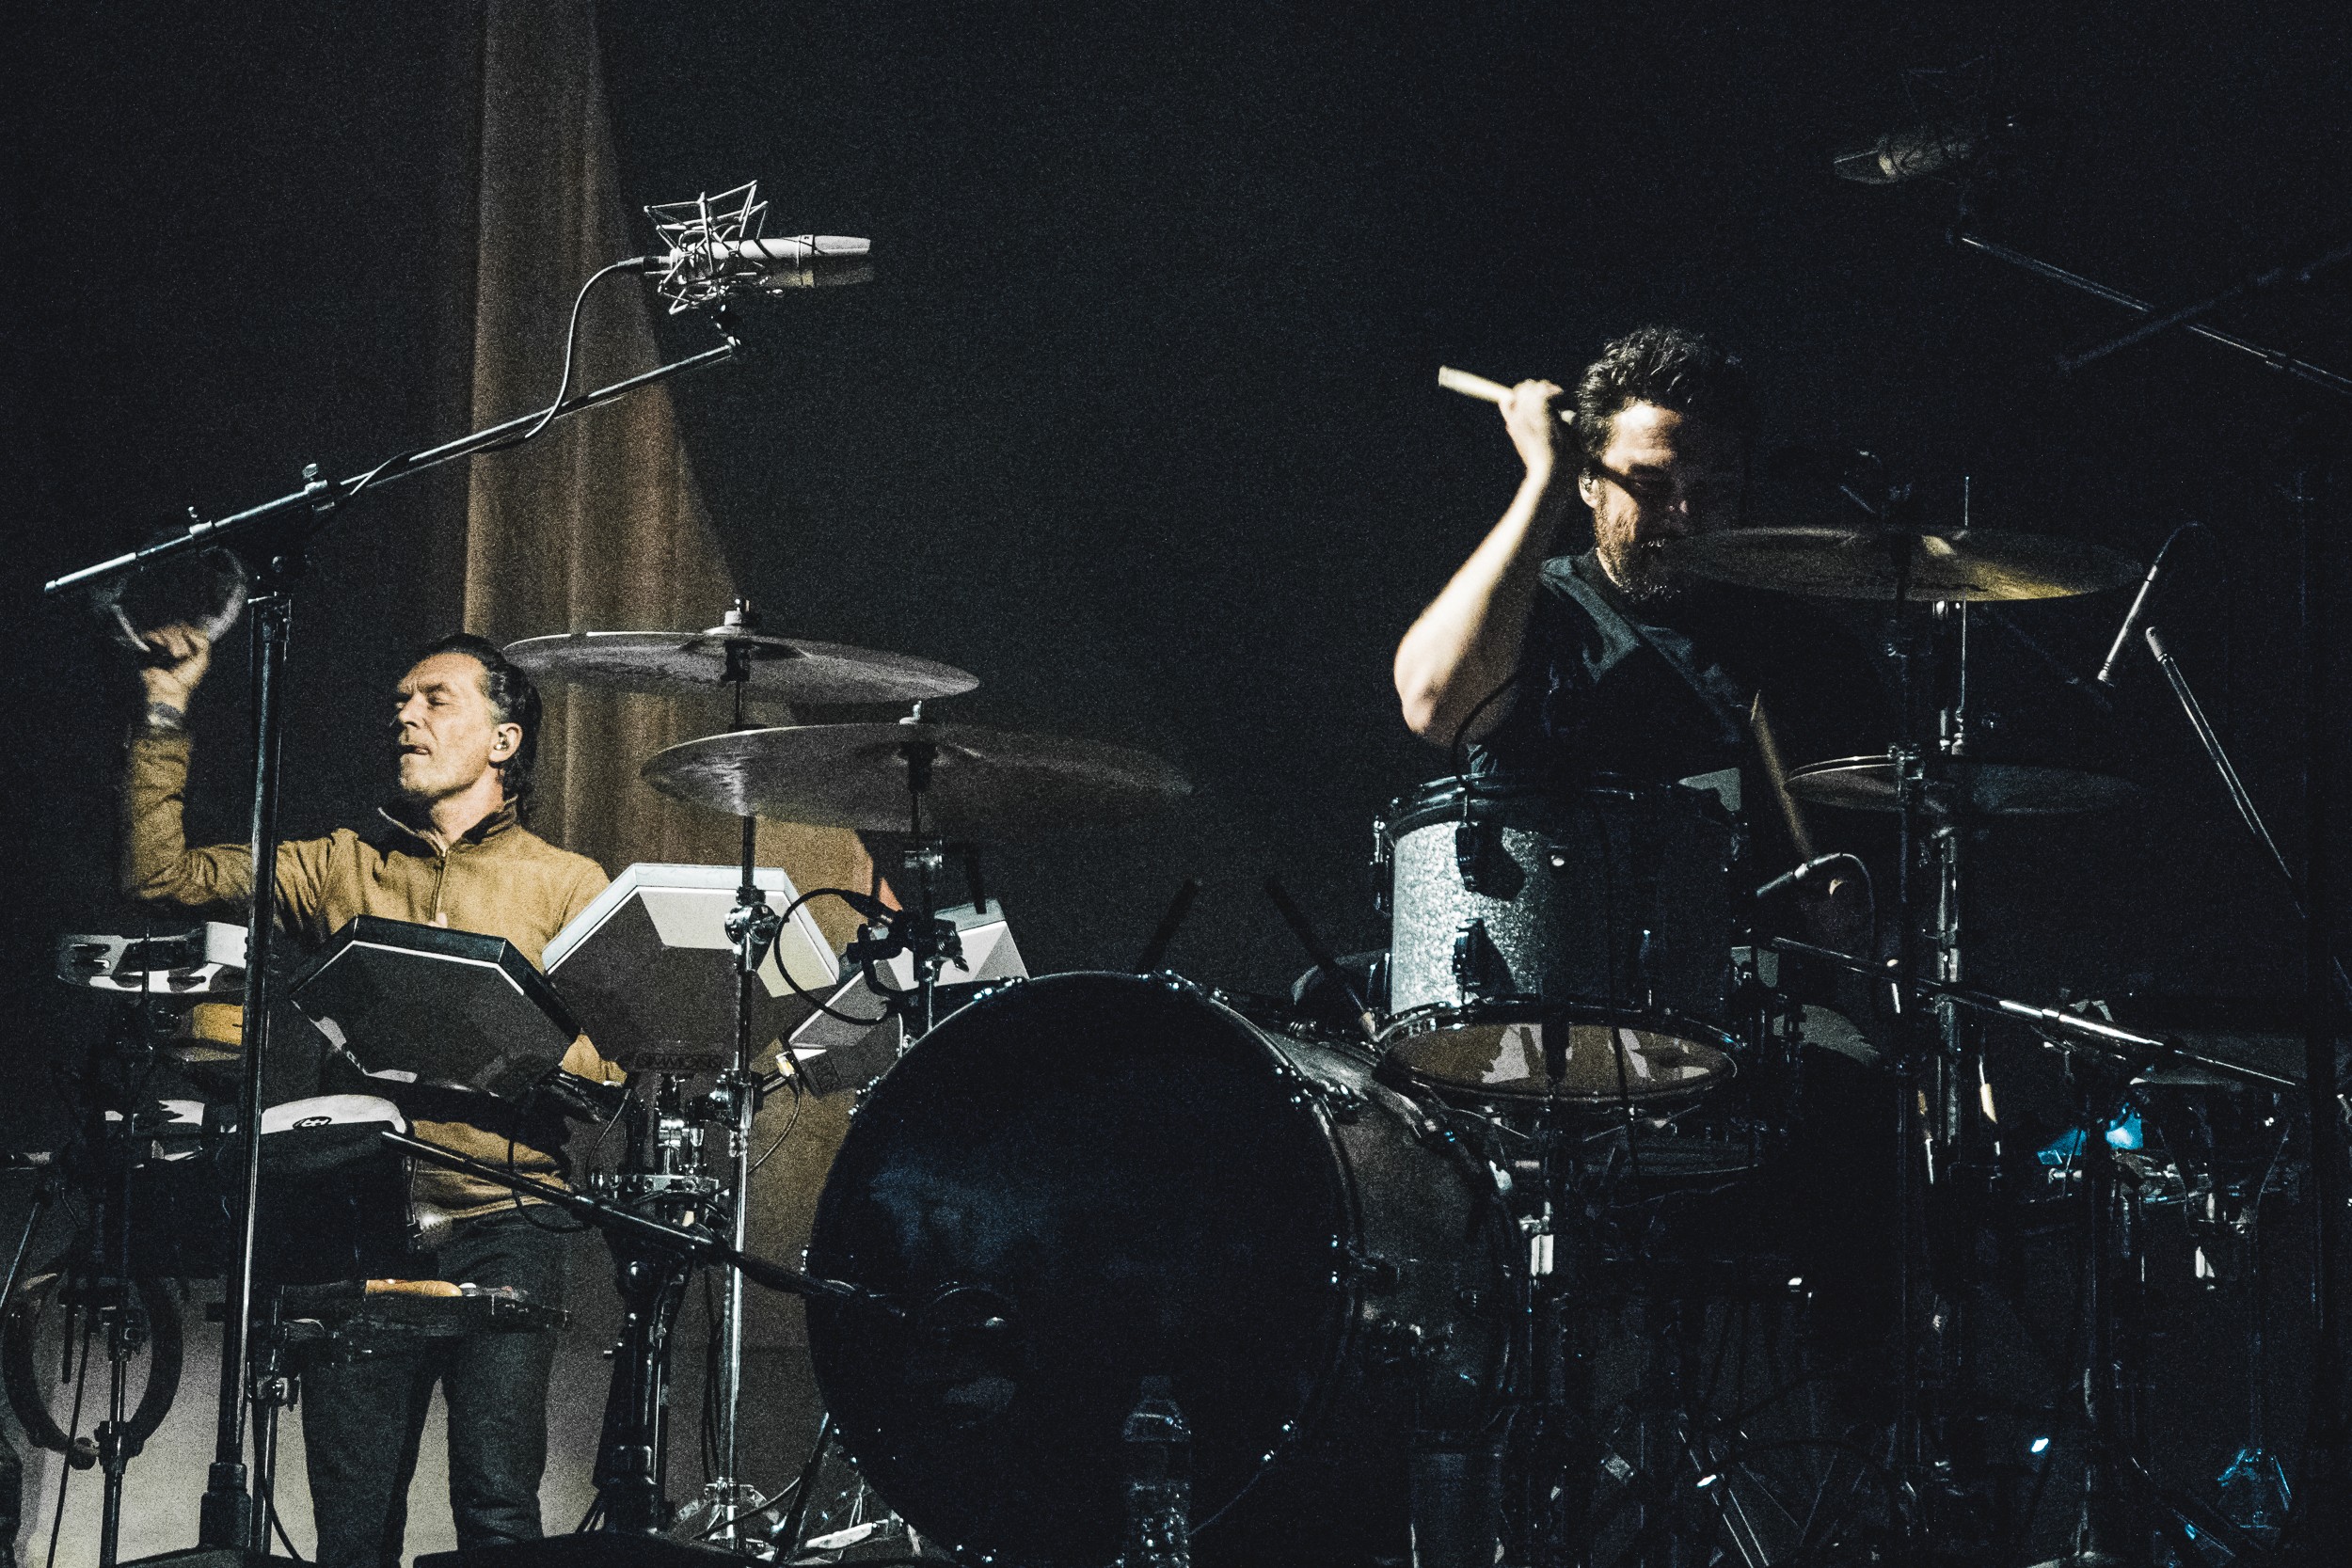 Arctic Monkeys tour: We review the band's LA show, British GQ